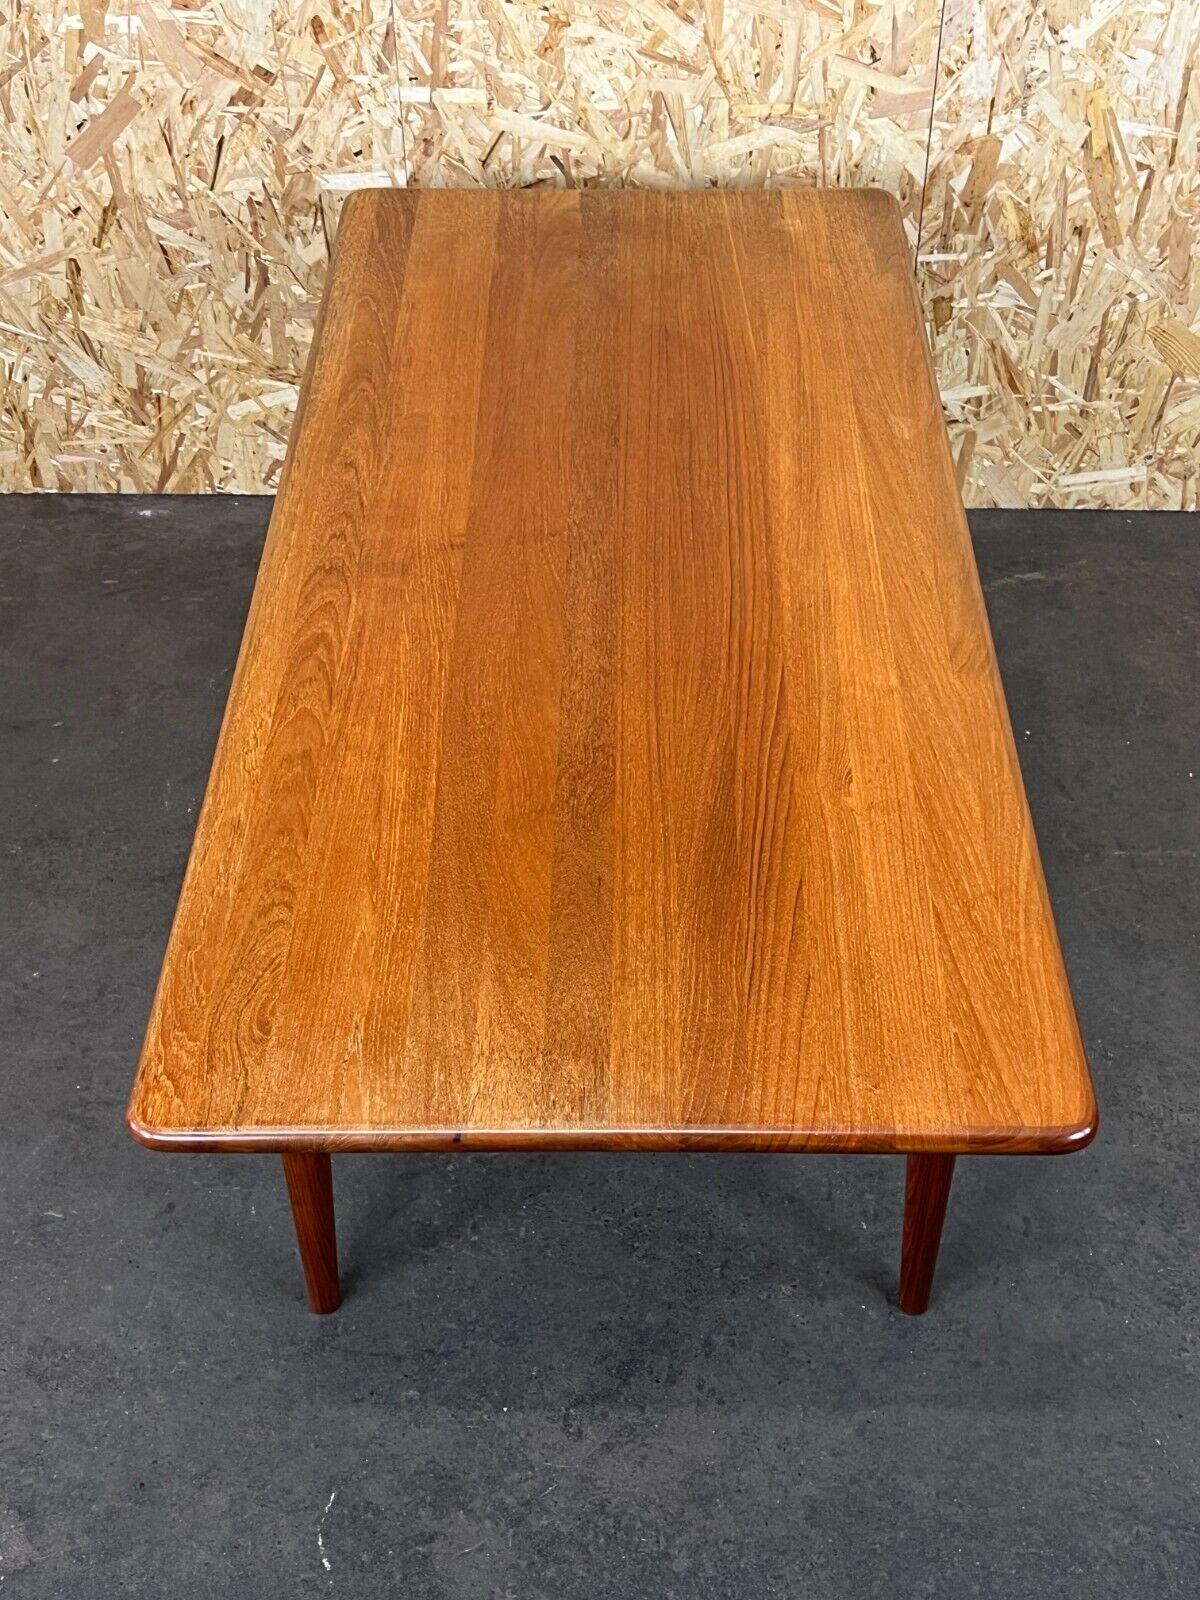 1960s 1970s Teak Table Coffee Table Danish Modern Design Denmark 9